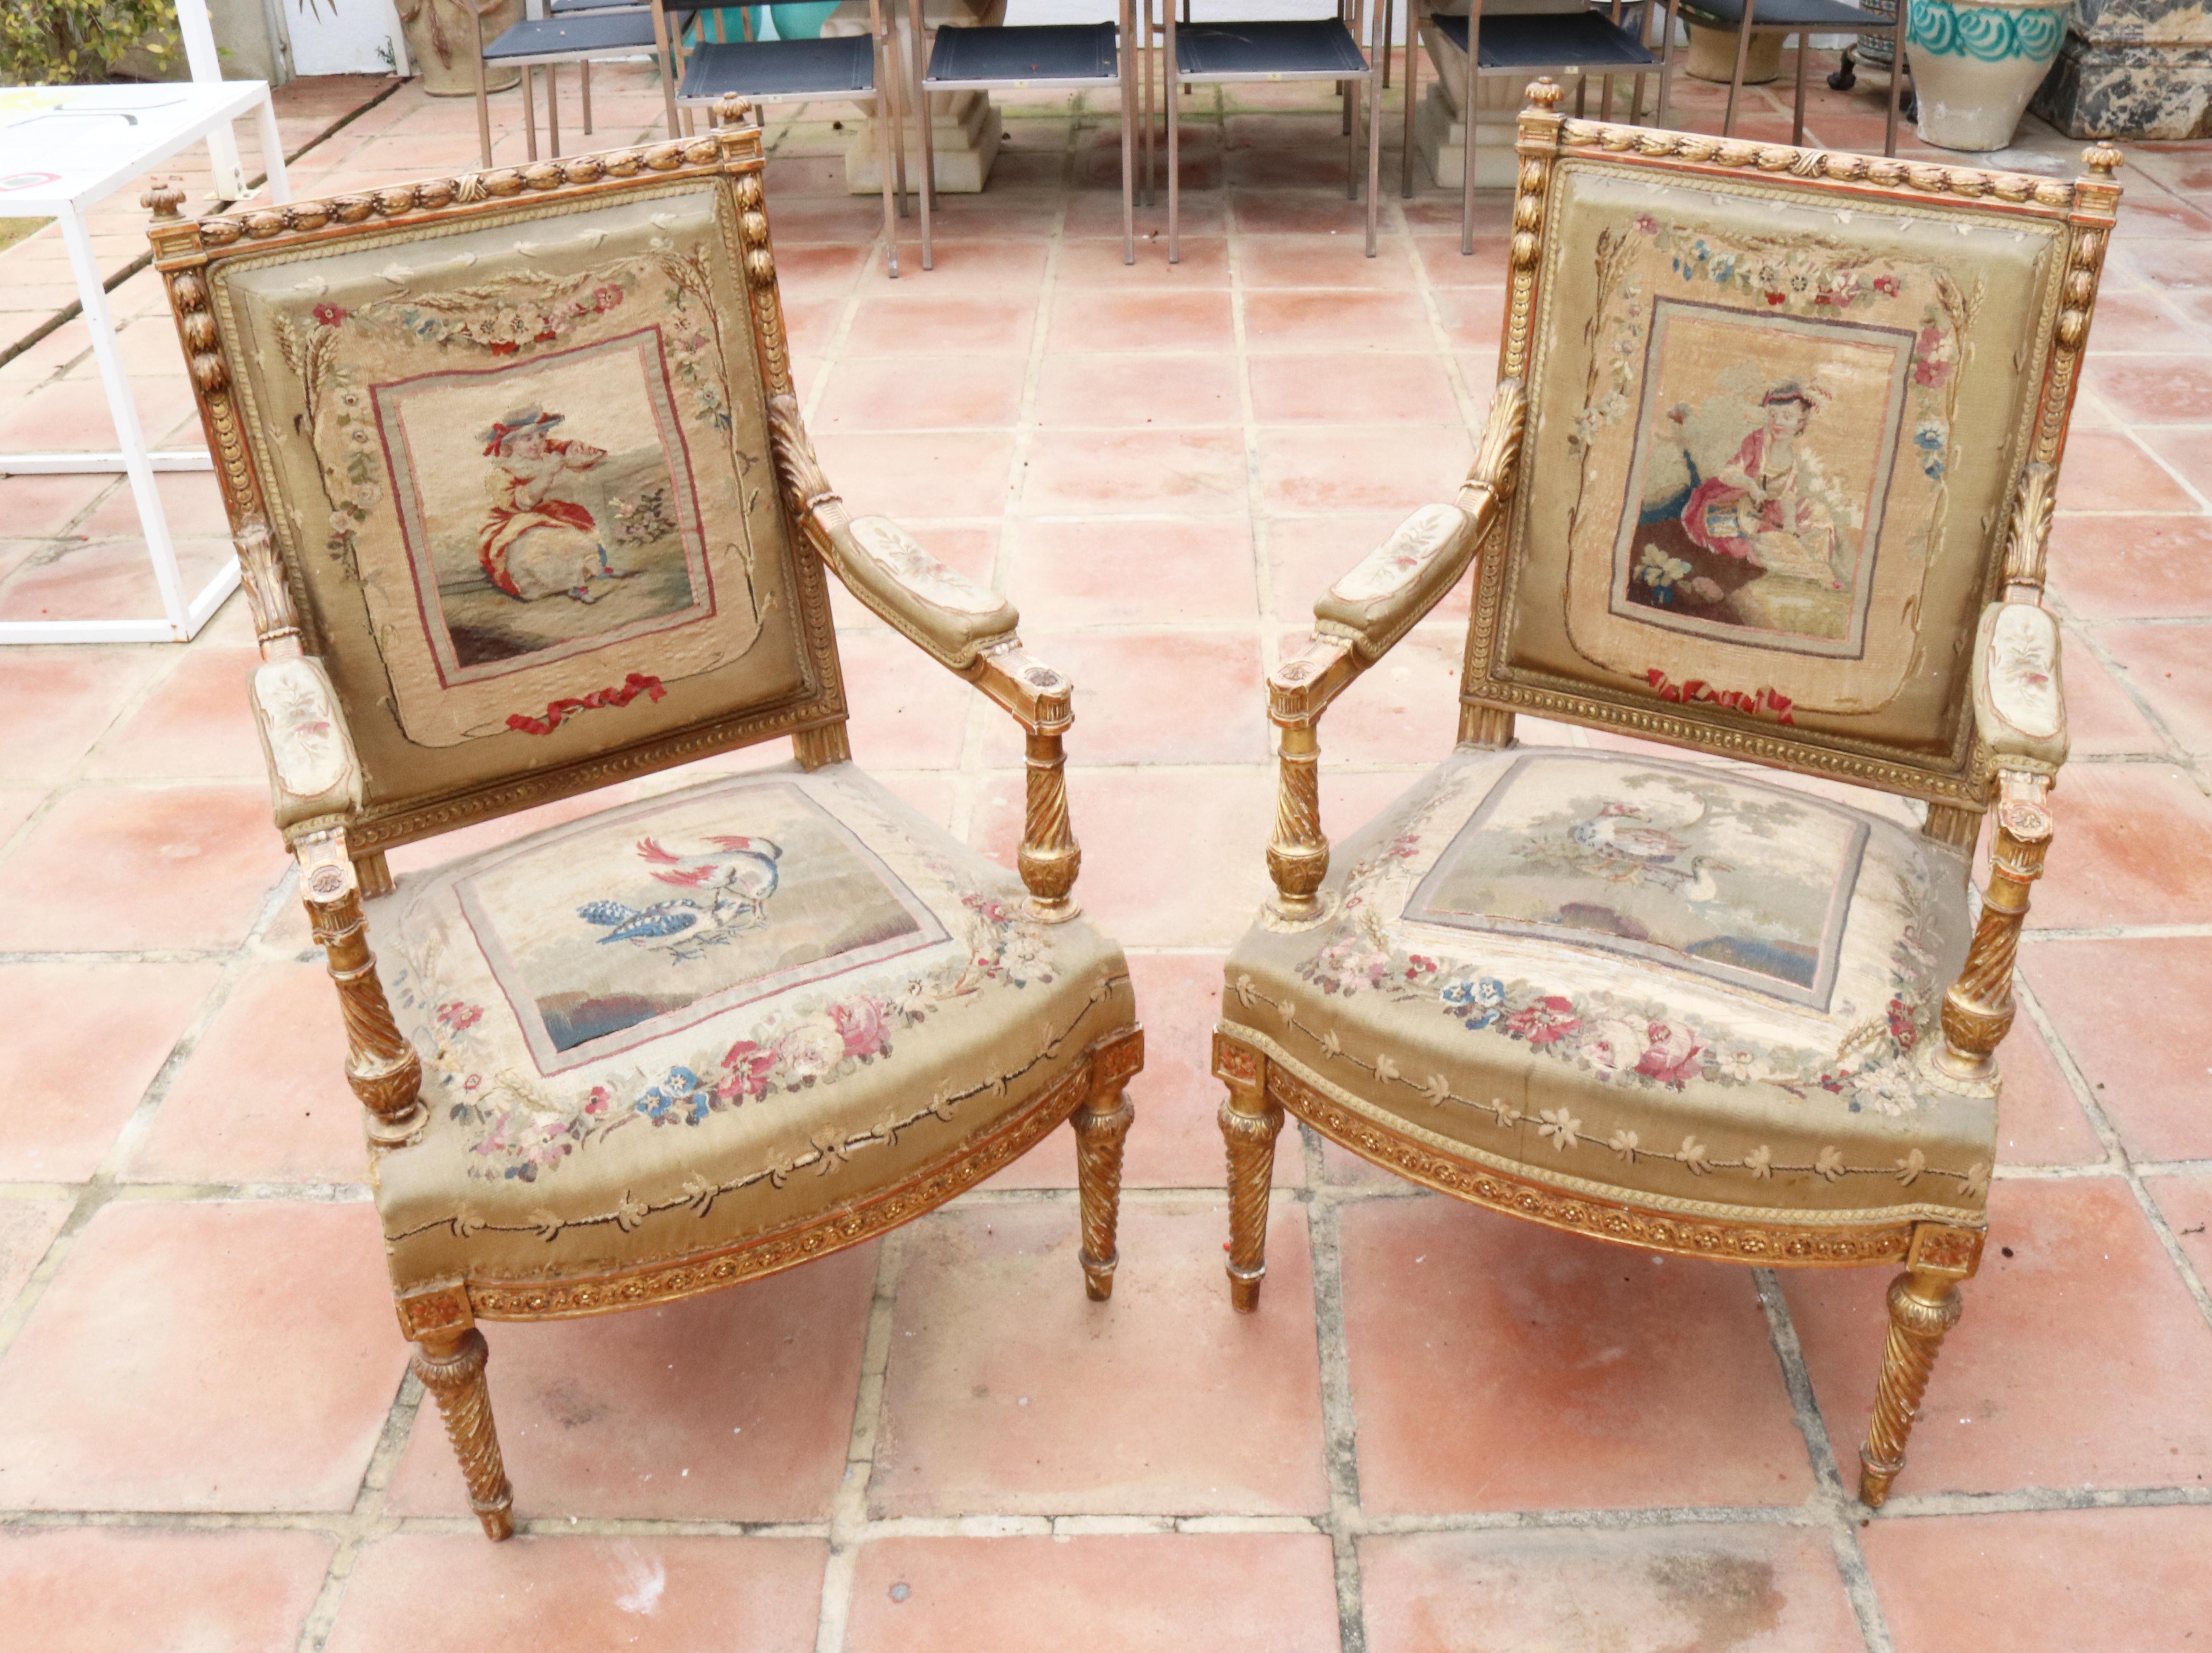 paire de fauteuils français tapissés d'Aubusson du XVIIIe siècle avec des scènes d'oiseaux et de personnages, dont le cadre en bois doré a été remplacé au XIXe siècle.

   